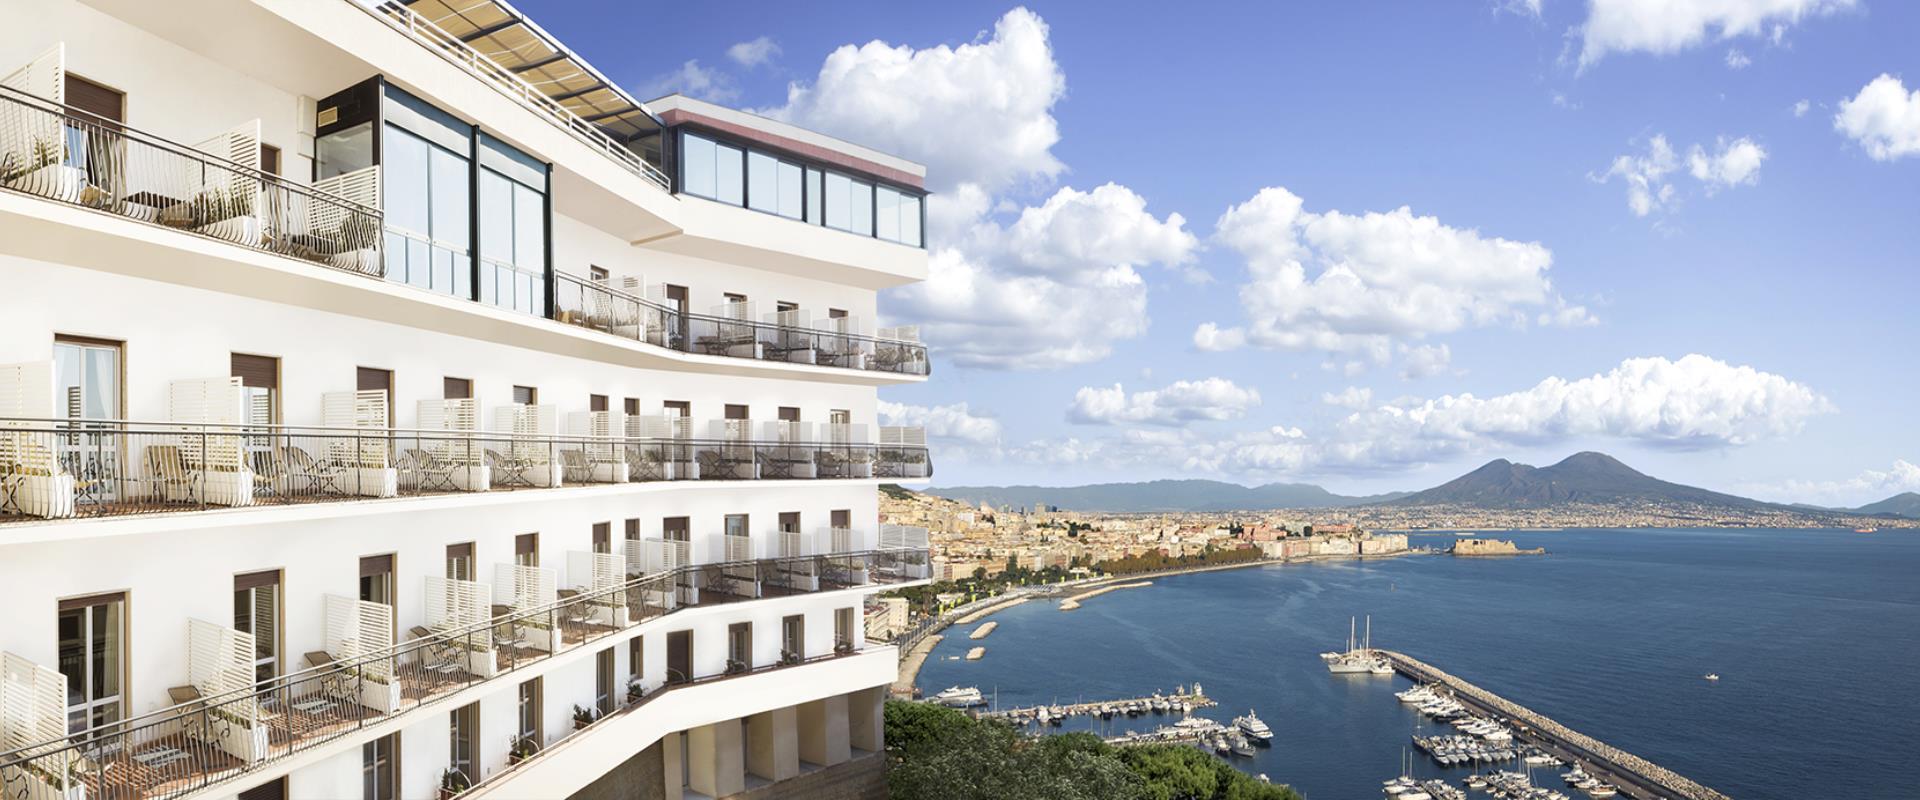 Hotel Paradiso Neapel